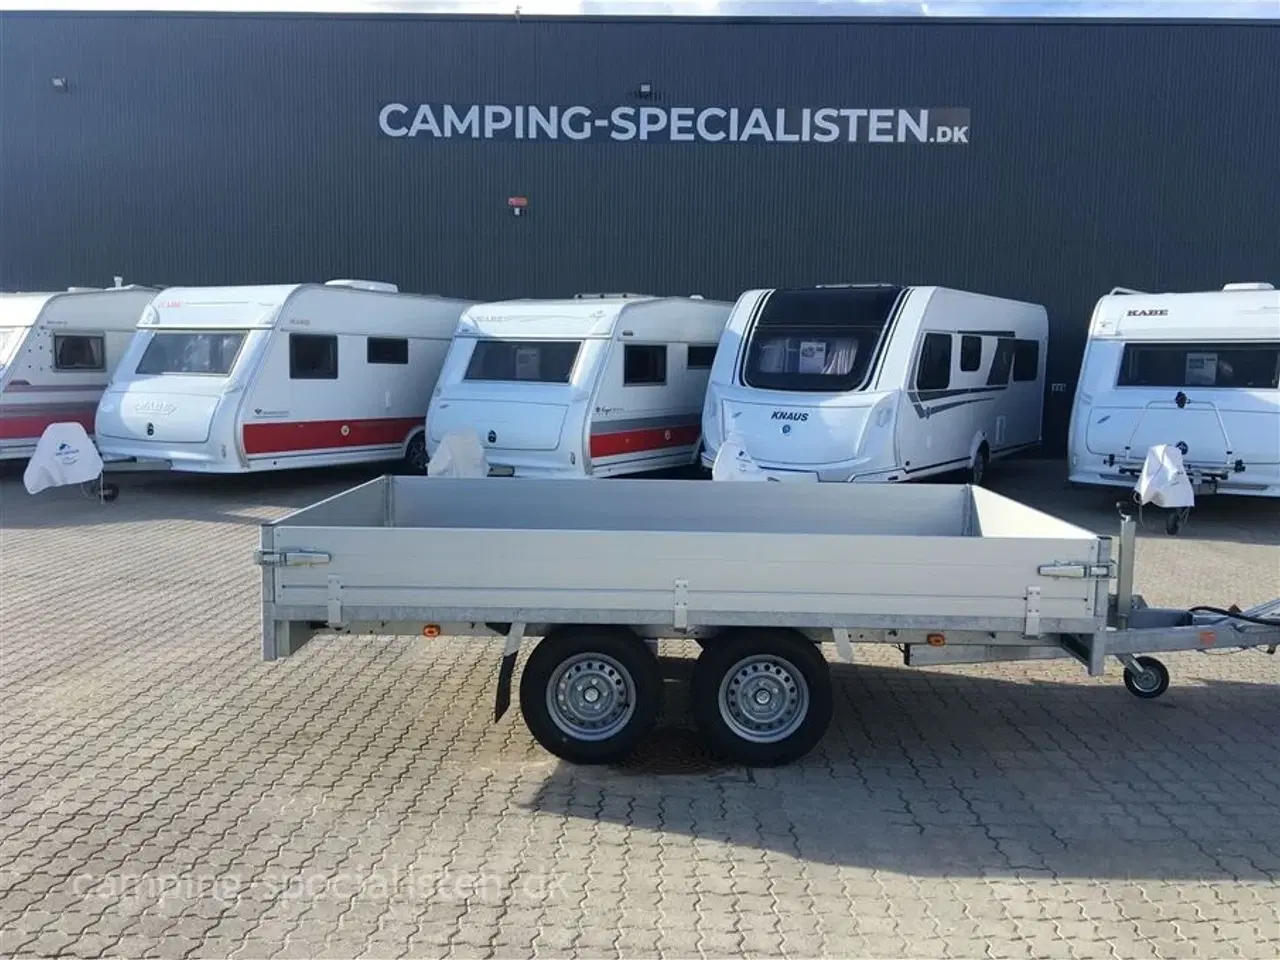 Billede 1 - 2024 - Selandia Anssems PSX 325 2500 kg lad trailer    Ny Lad trailer Anssems 2500 Kg model 2024 Camping-Specialisten.dk i Aarhus og Silkeborg